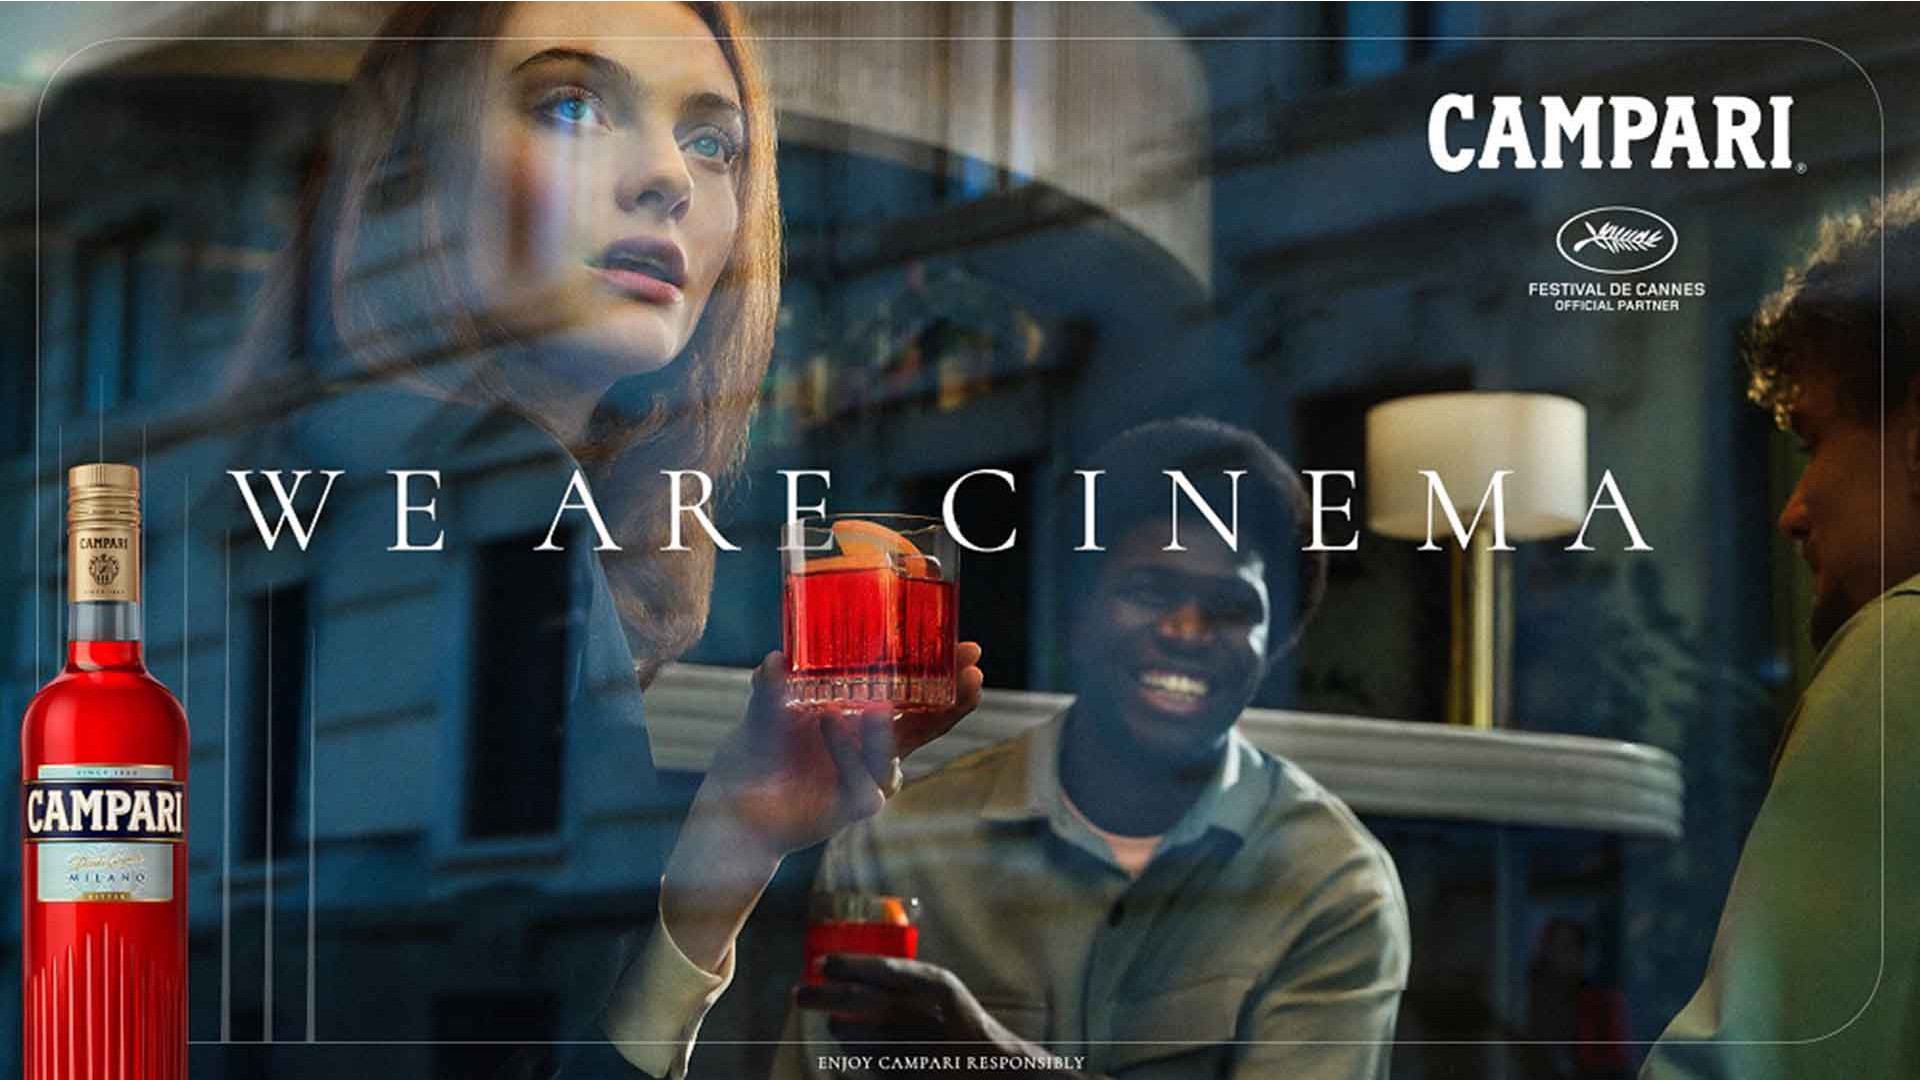 Campari al Festival di Cannes con  “We are Cinema”, adv on air in Italia a settembre con creatività di Independent Ideas, scelta per questo progetto, e planning di Mindshare su tv e social